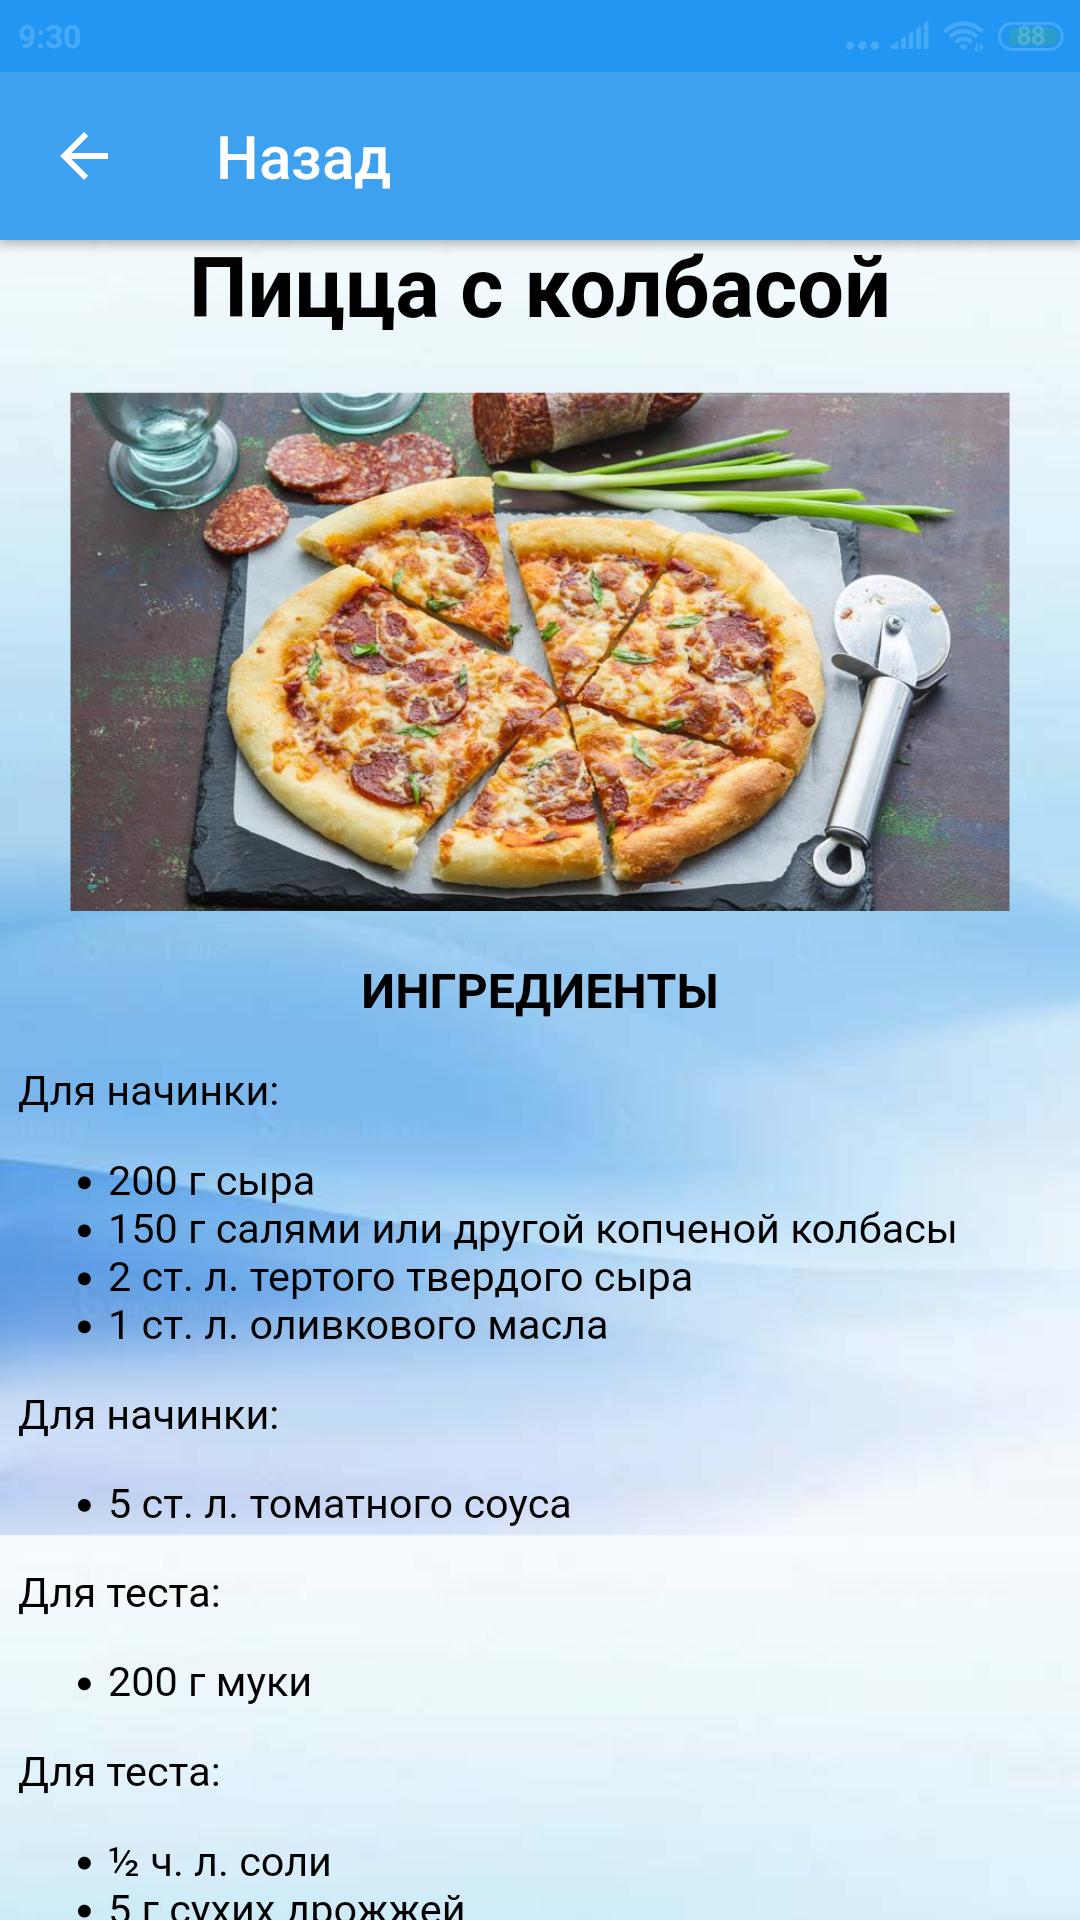 рецепт пиццы 4 сыра на английском языке фото 49